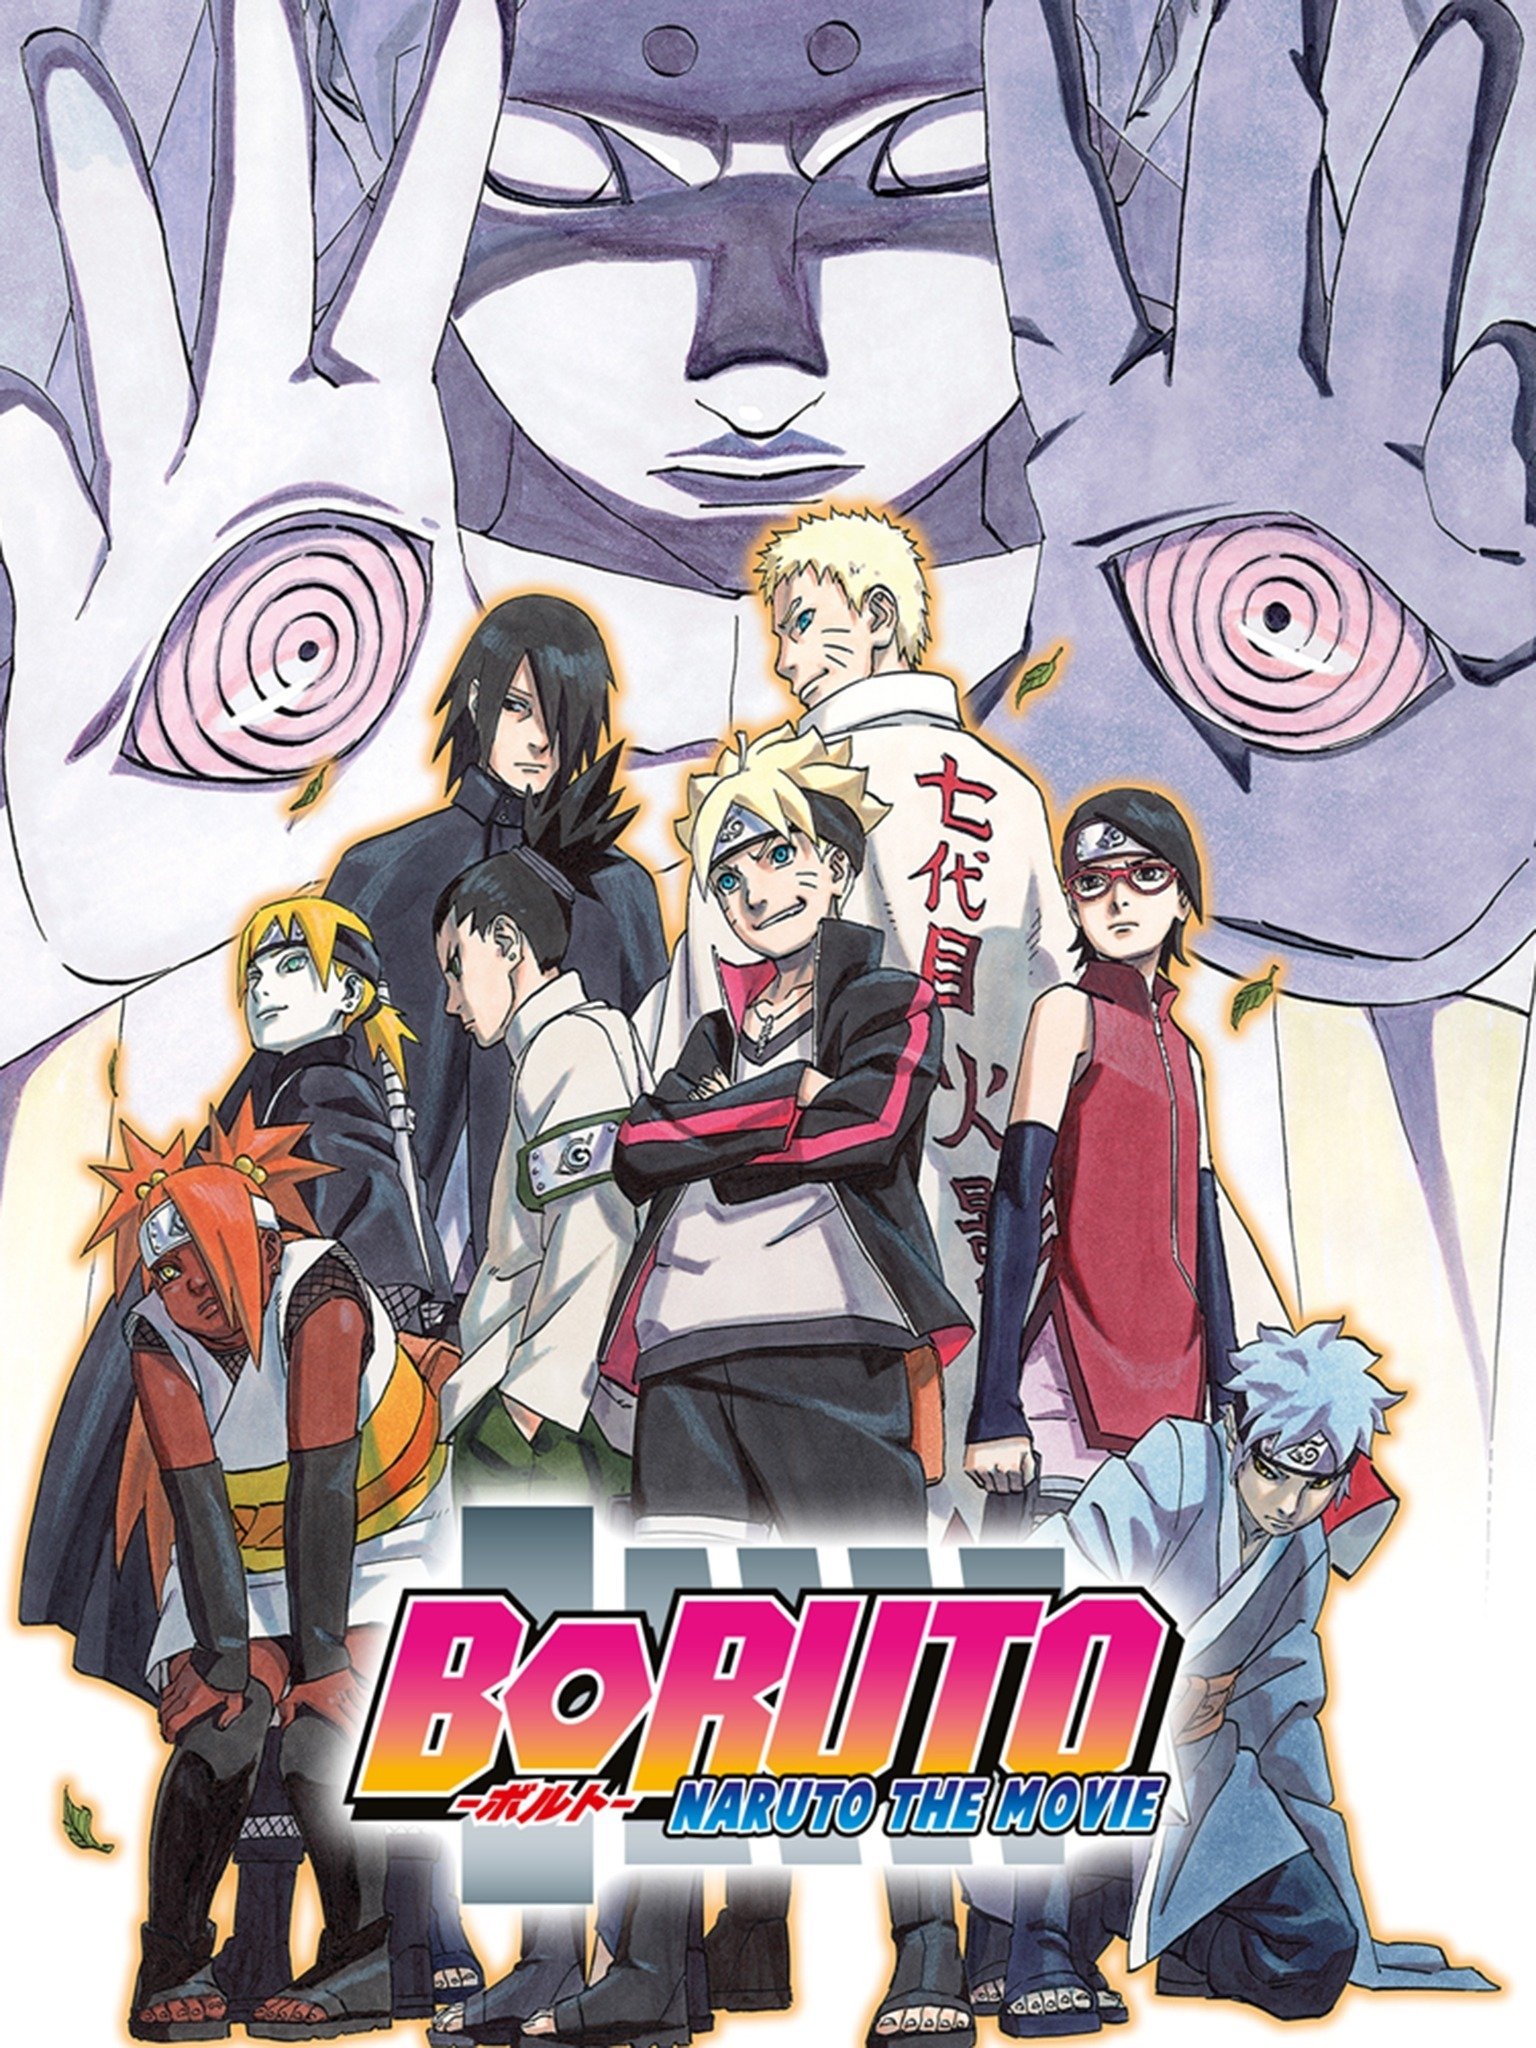 Boruto Naruto The Movie English